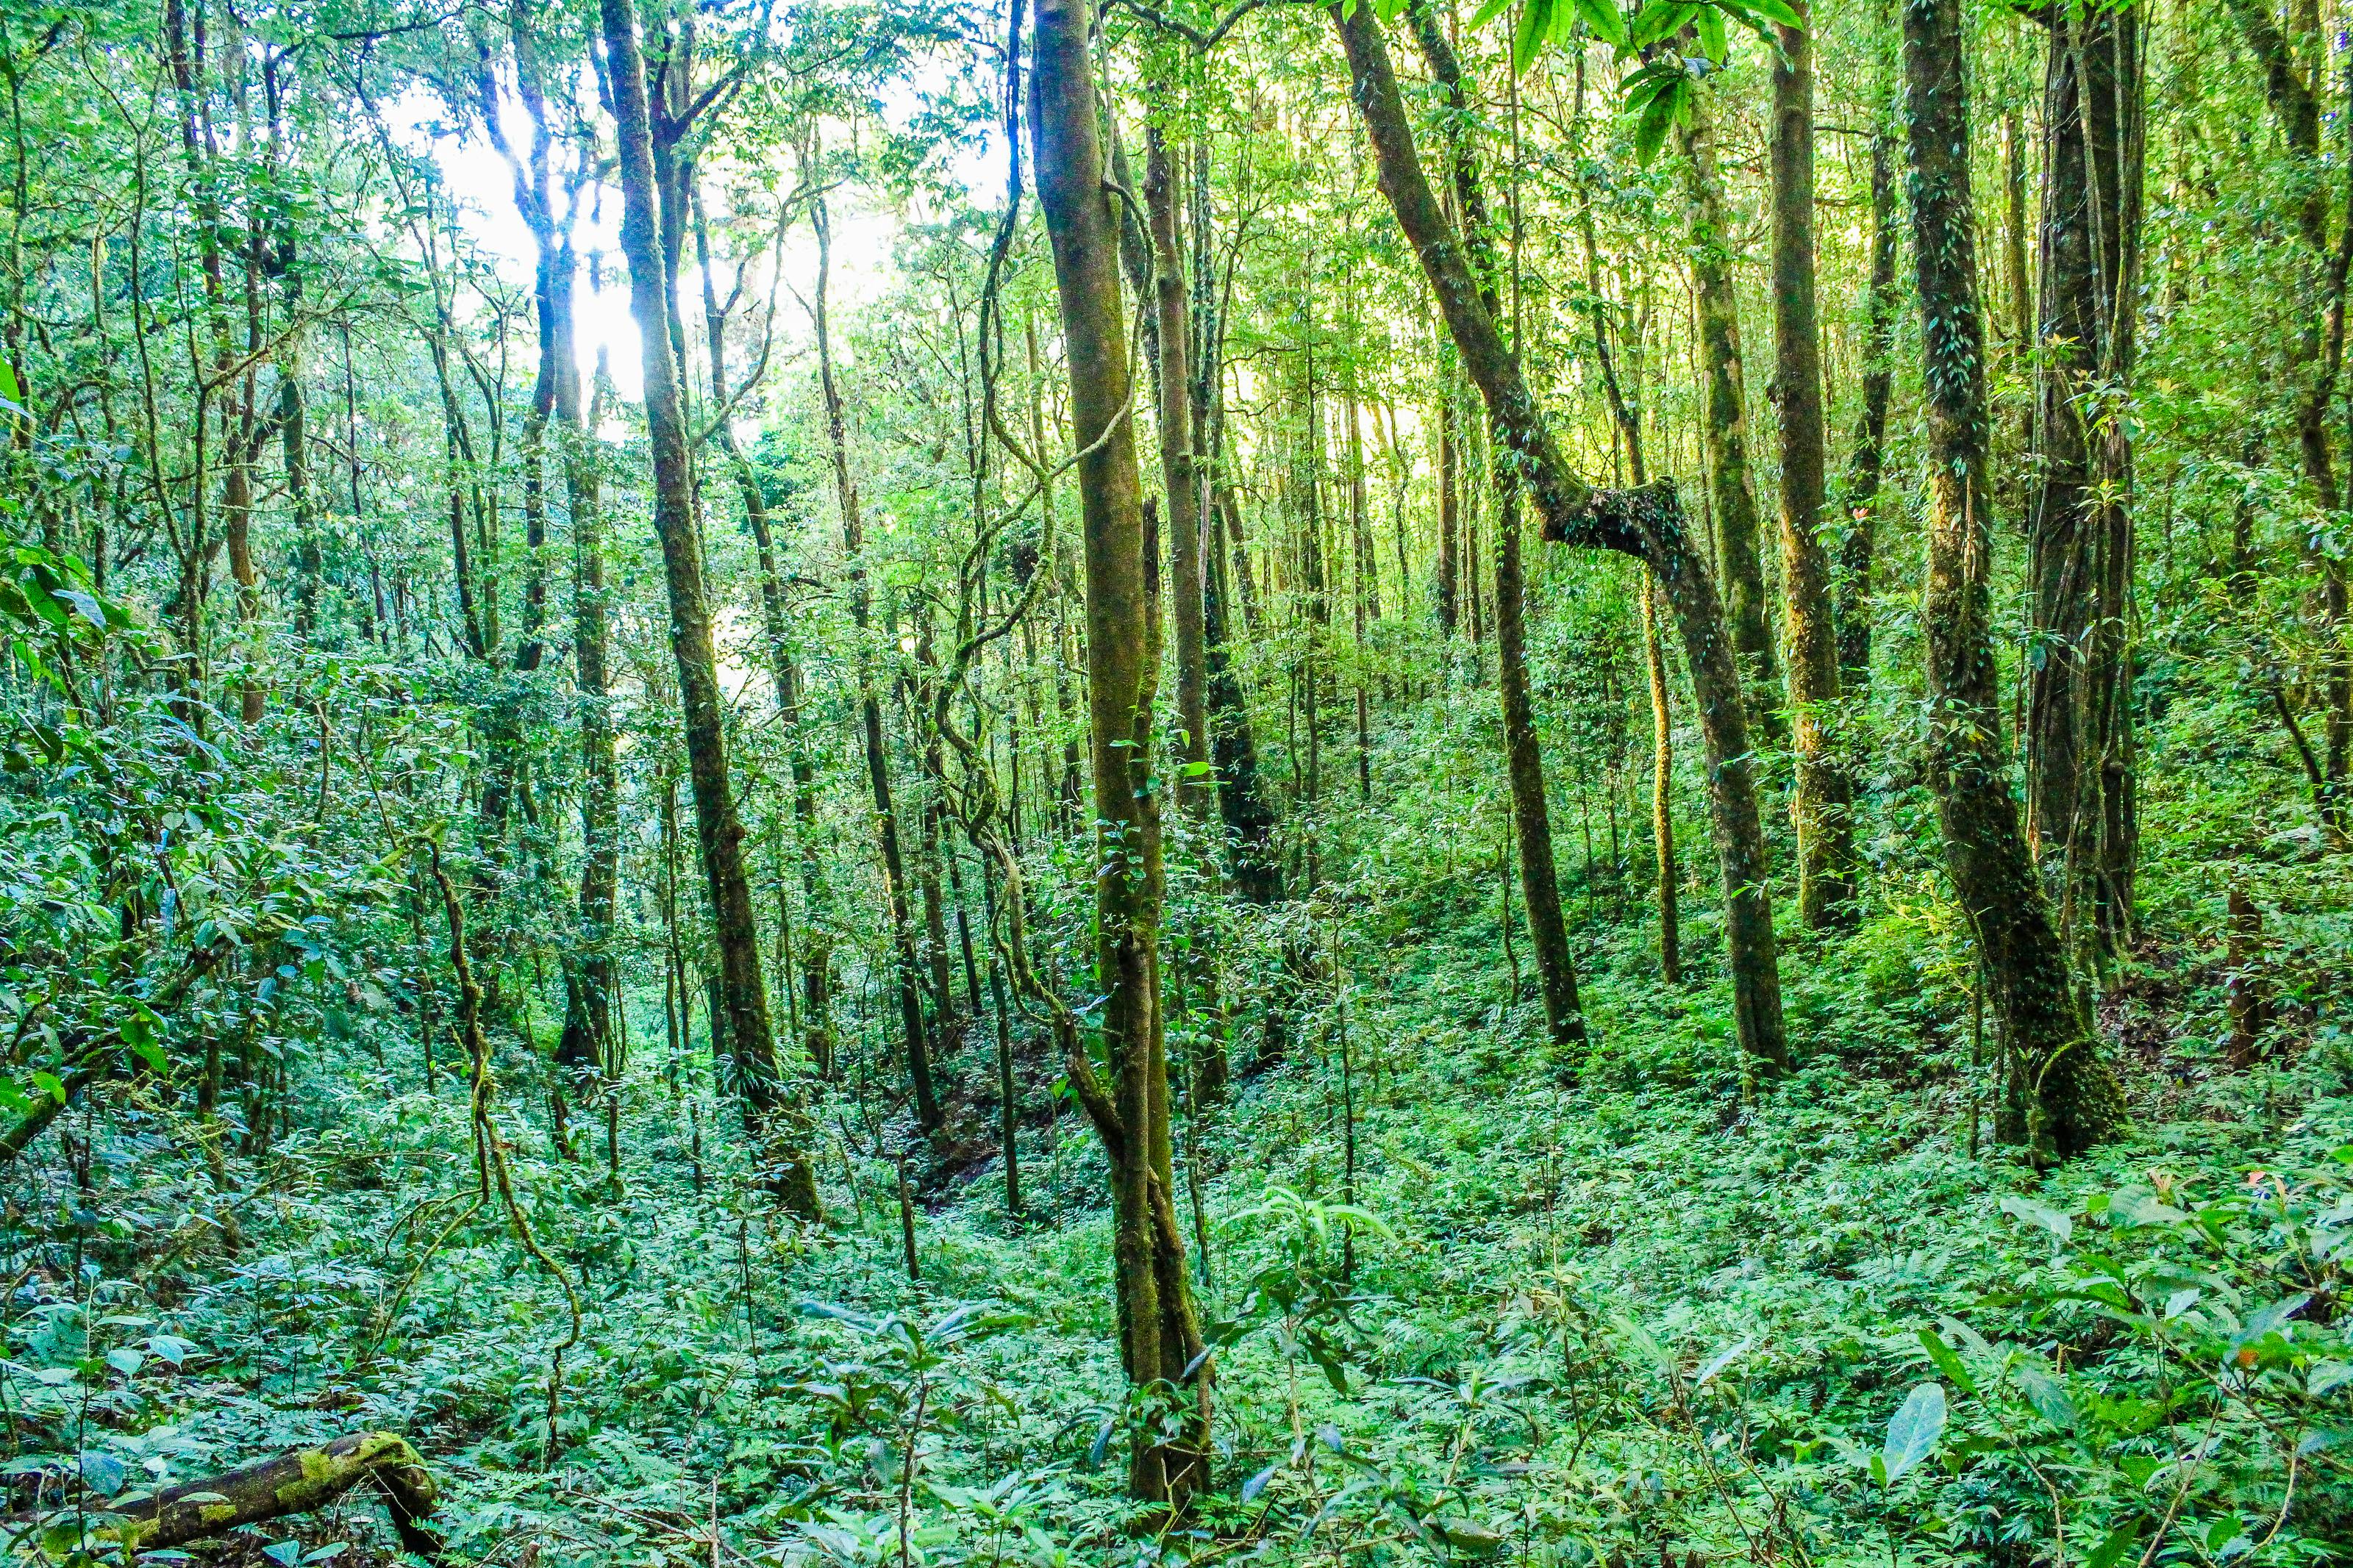 ジャングル ジャングルの壁紙 ジャングルの背景の無料の写真素材